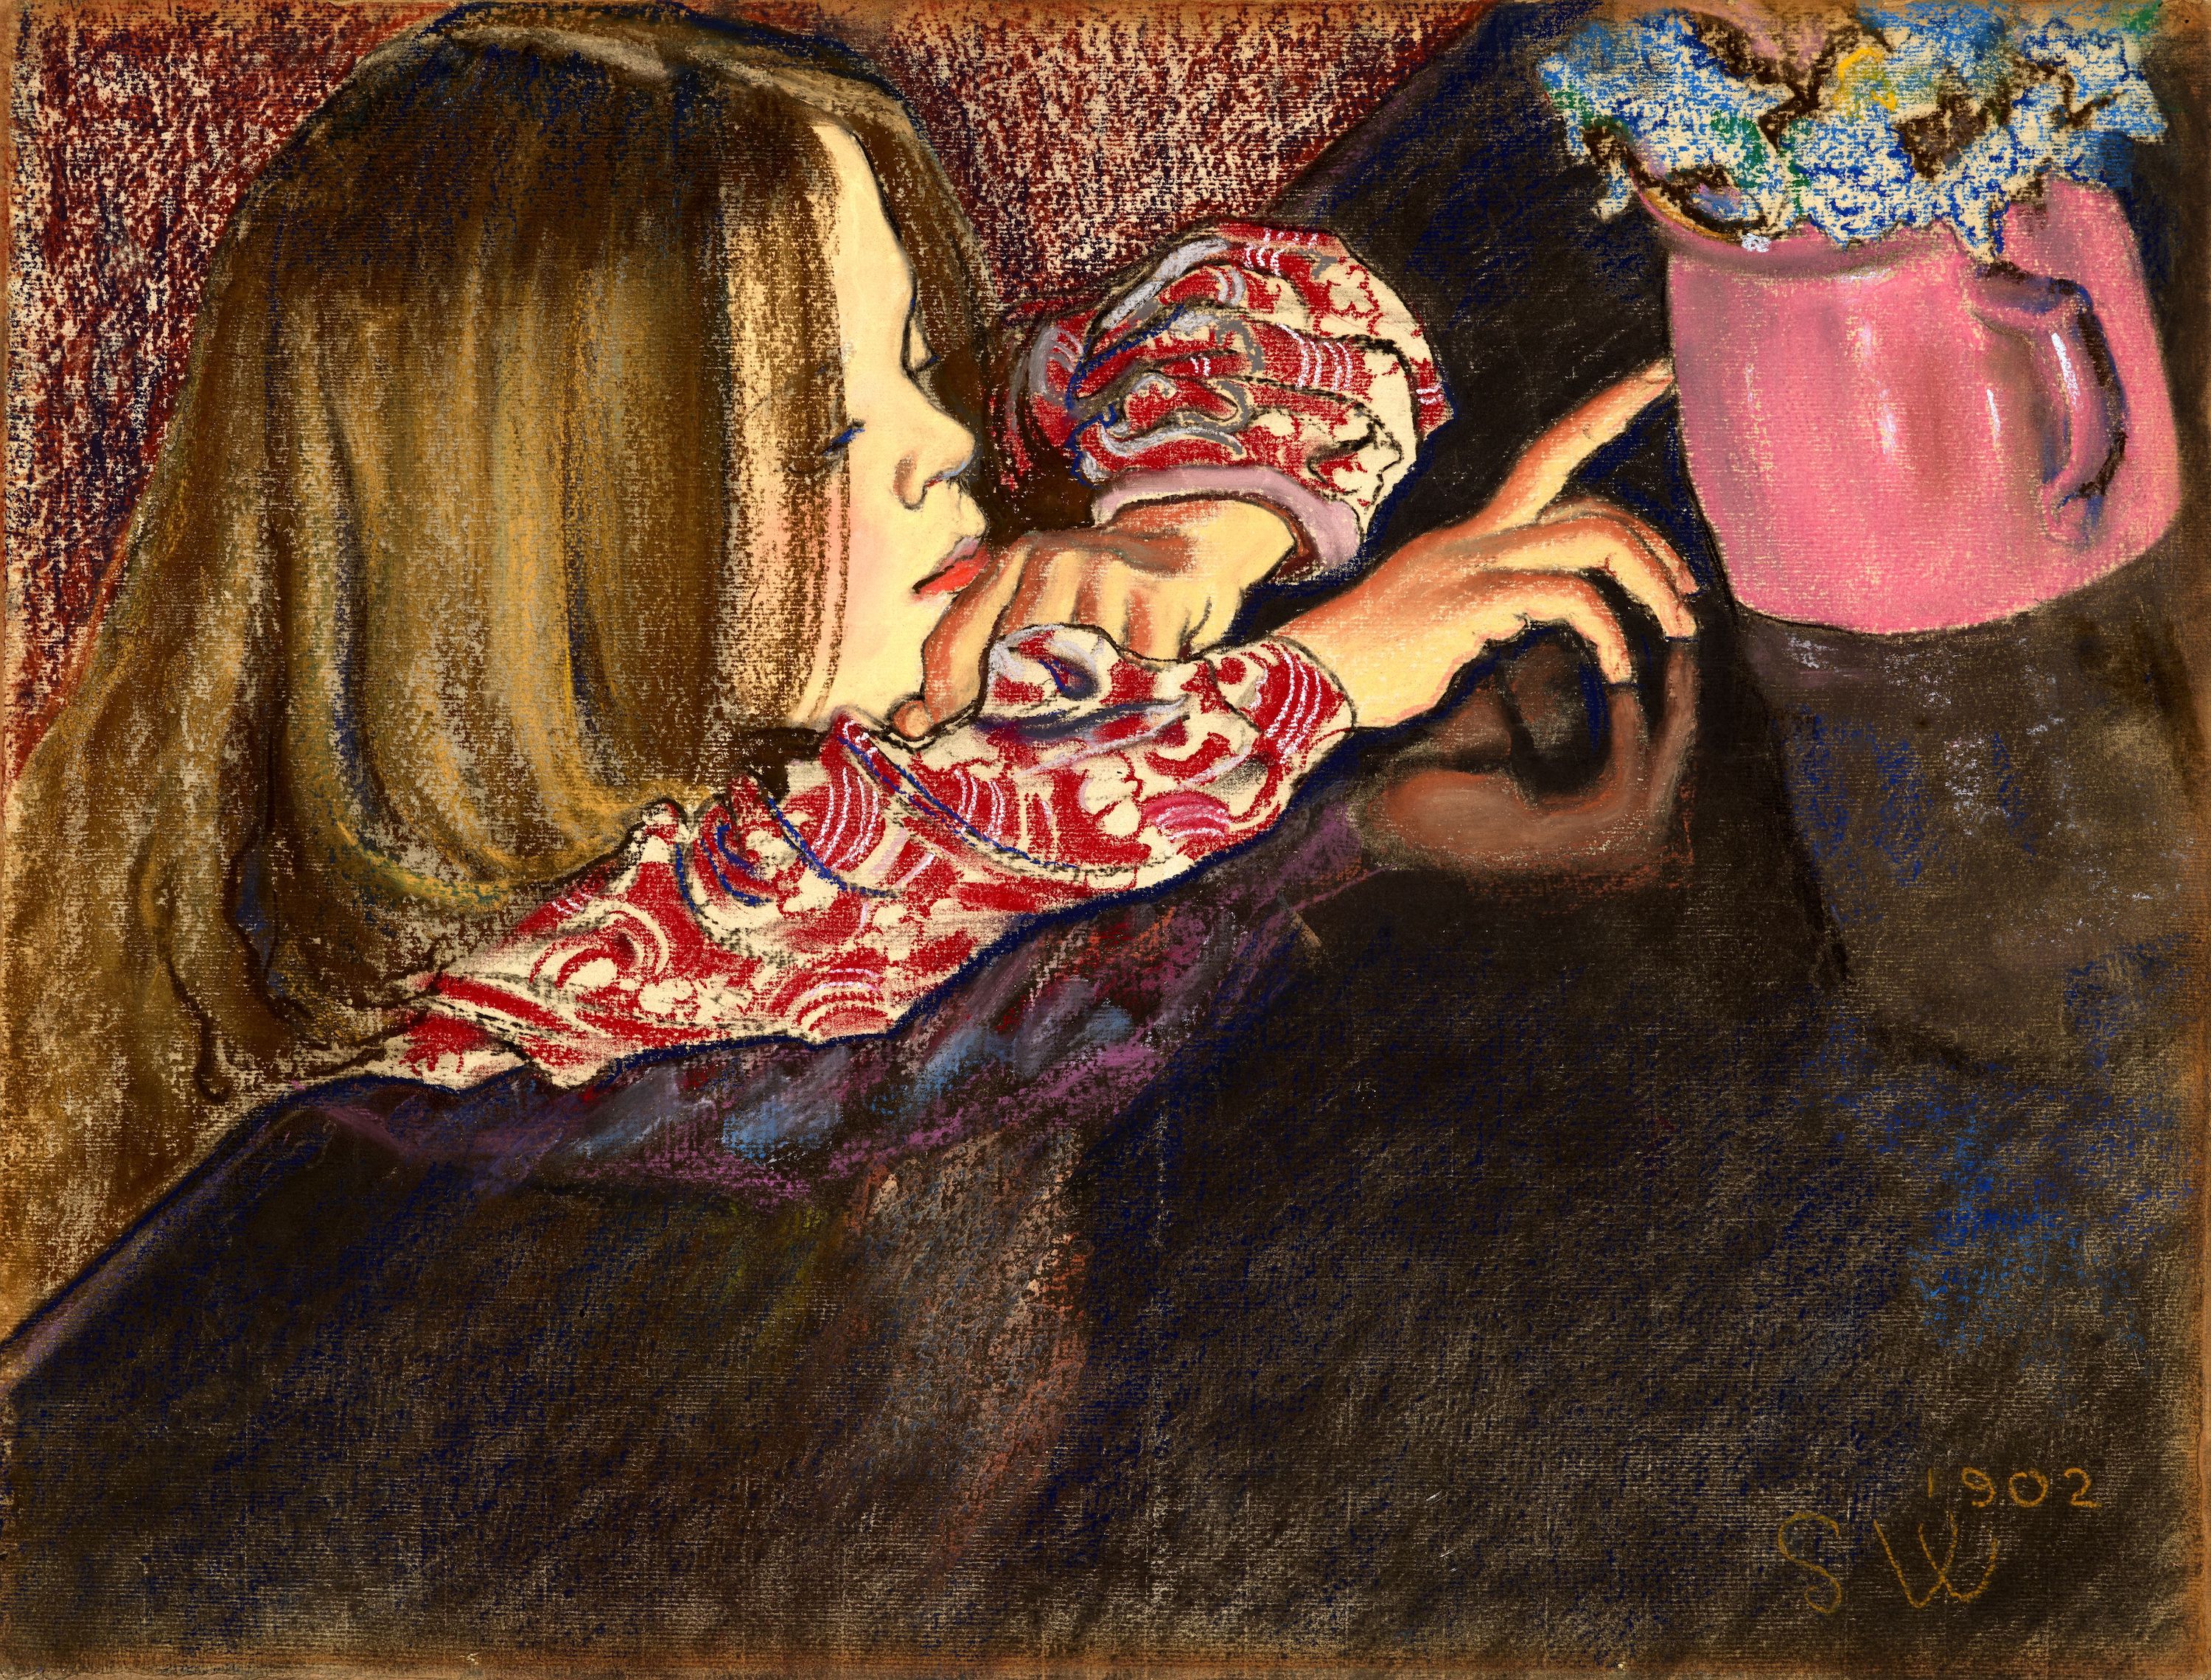 꽃병과 소녀 by Stanisław Wyspiański - 1902 - 47.5 x 62.8 cm 